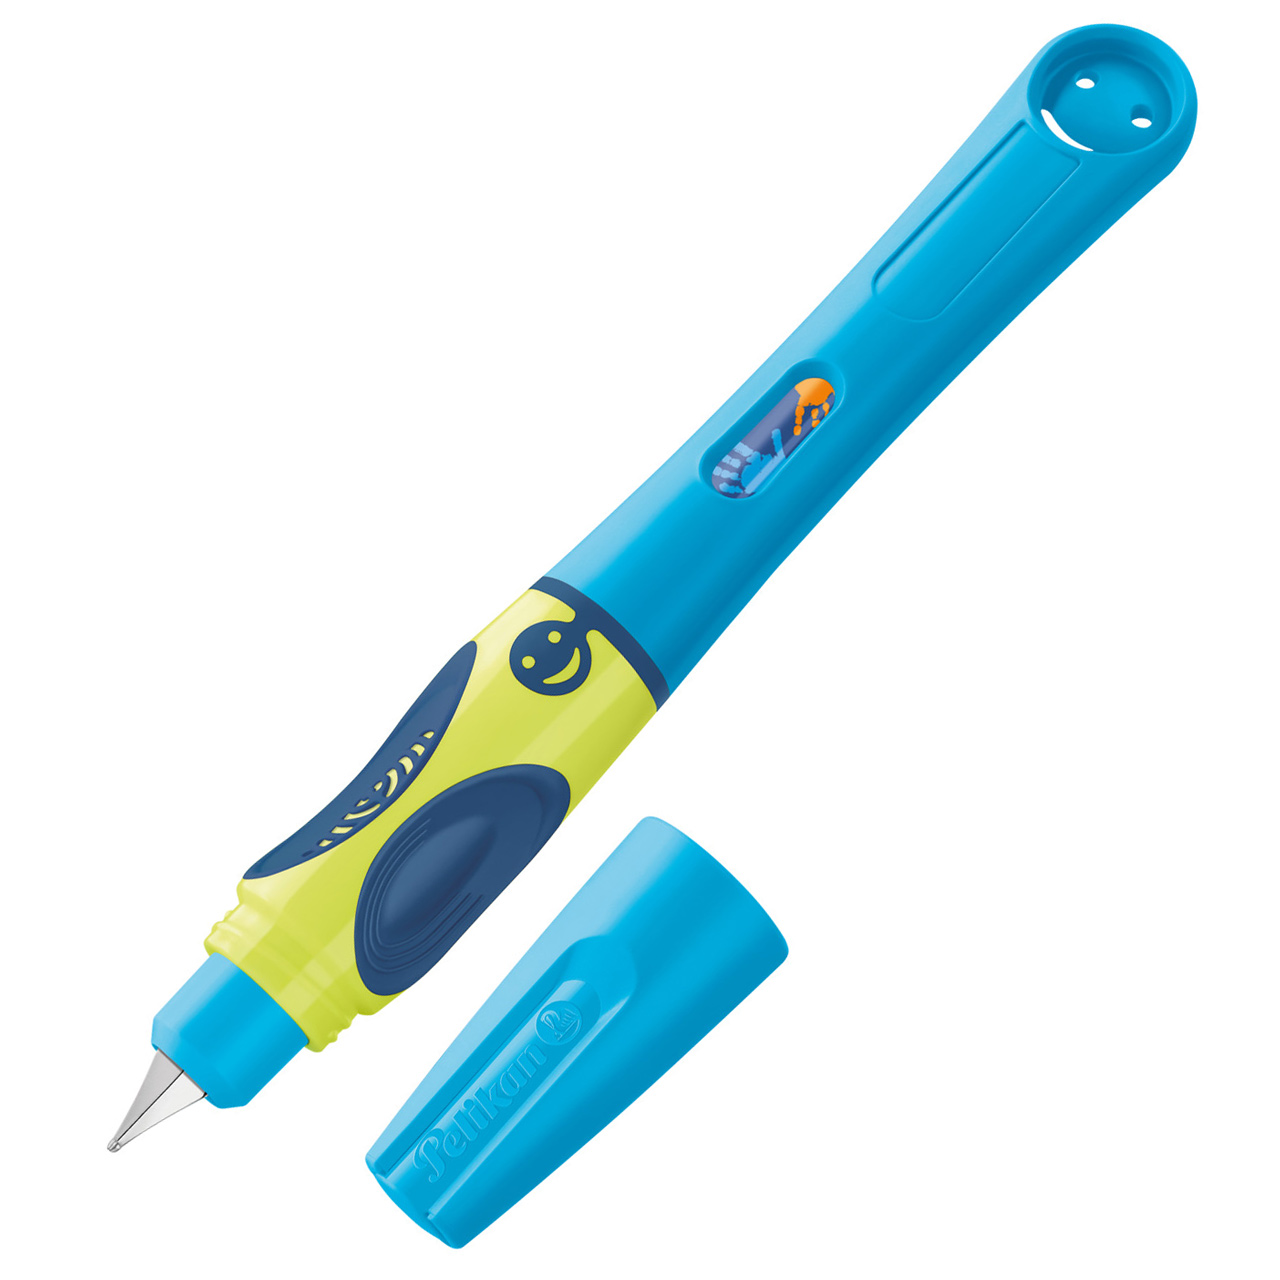 Pelikan-Griffix-fueller-820363-Neon-fresh-blue-blau-gruen-Rechtshaender-schreiblernfueller-lafueliki